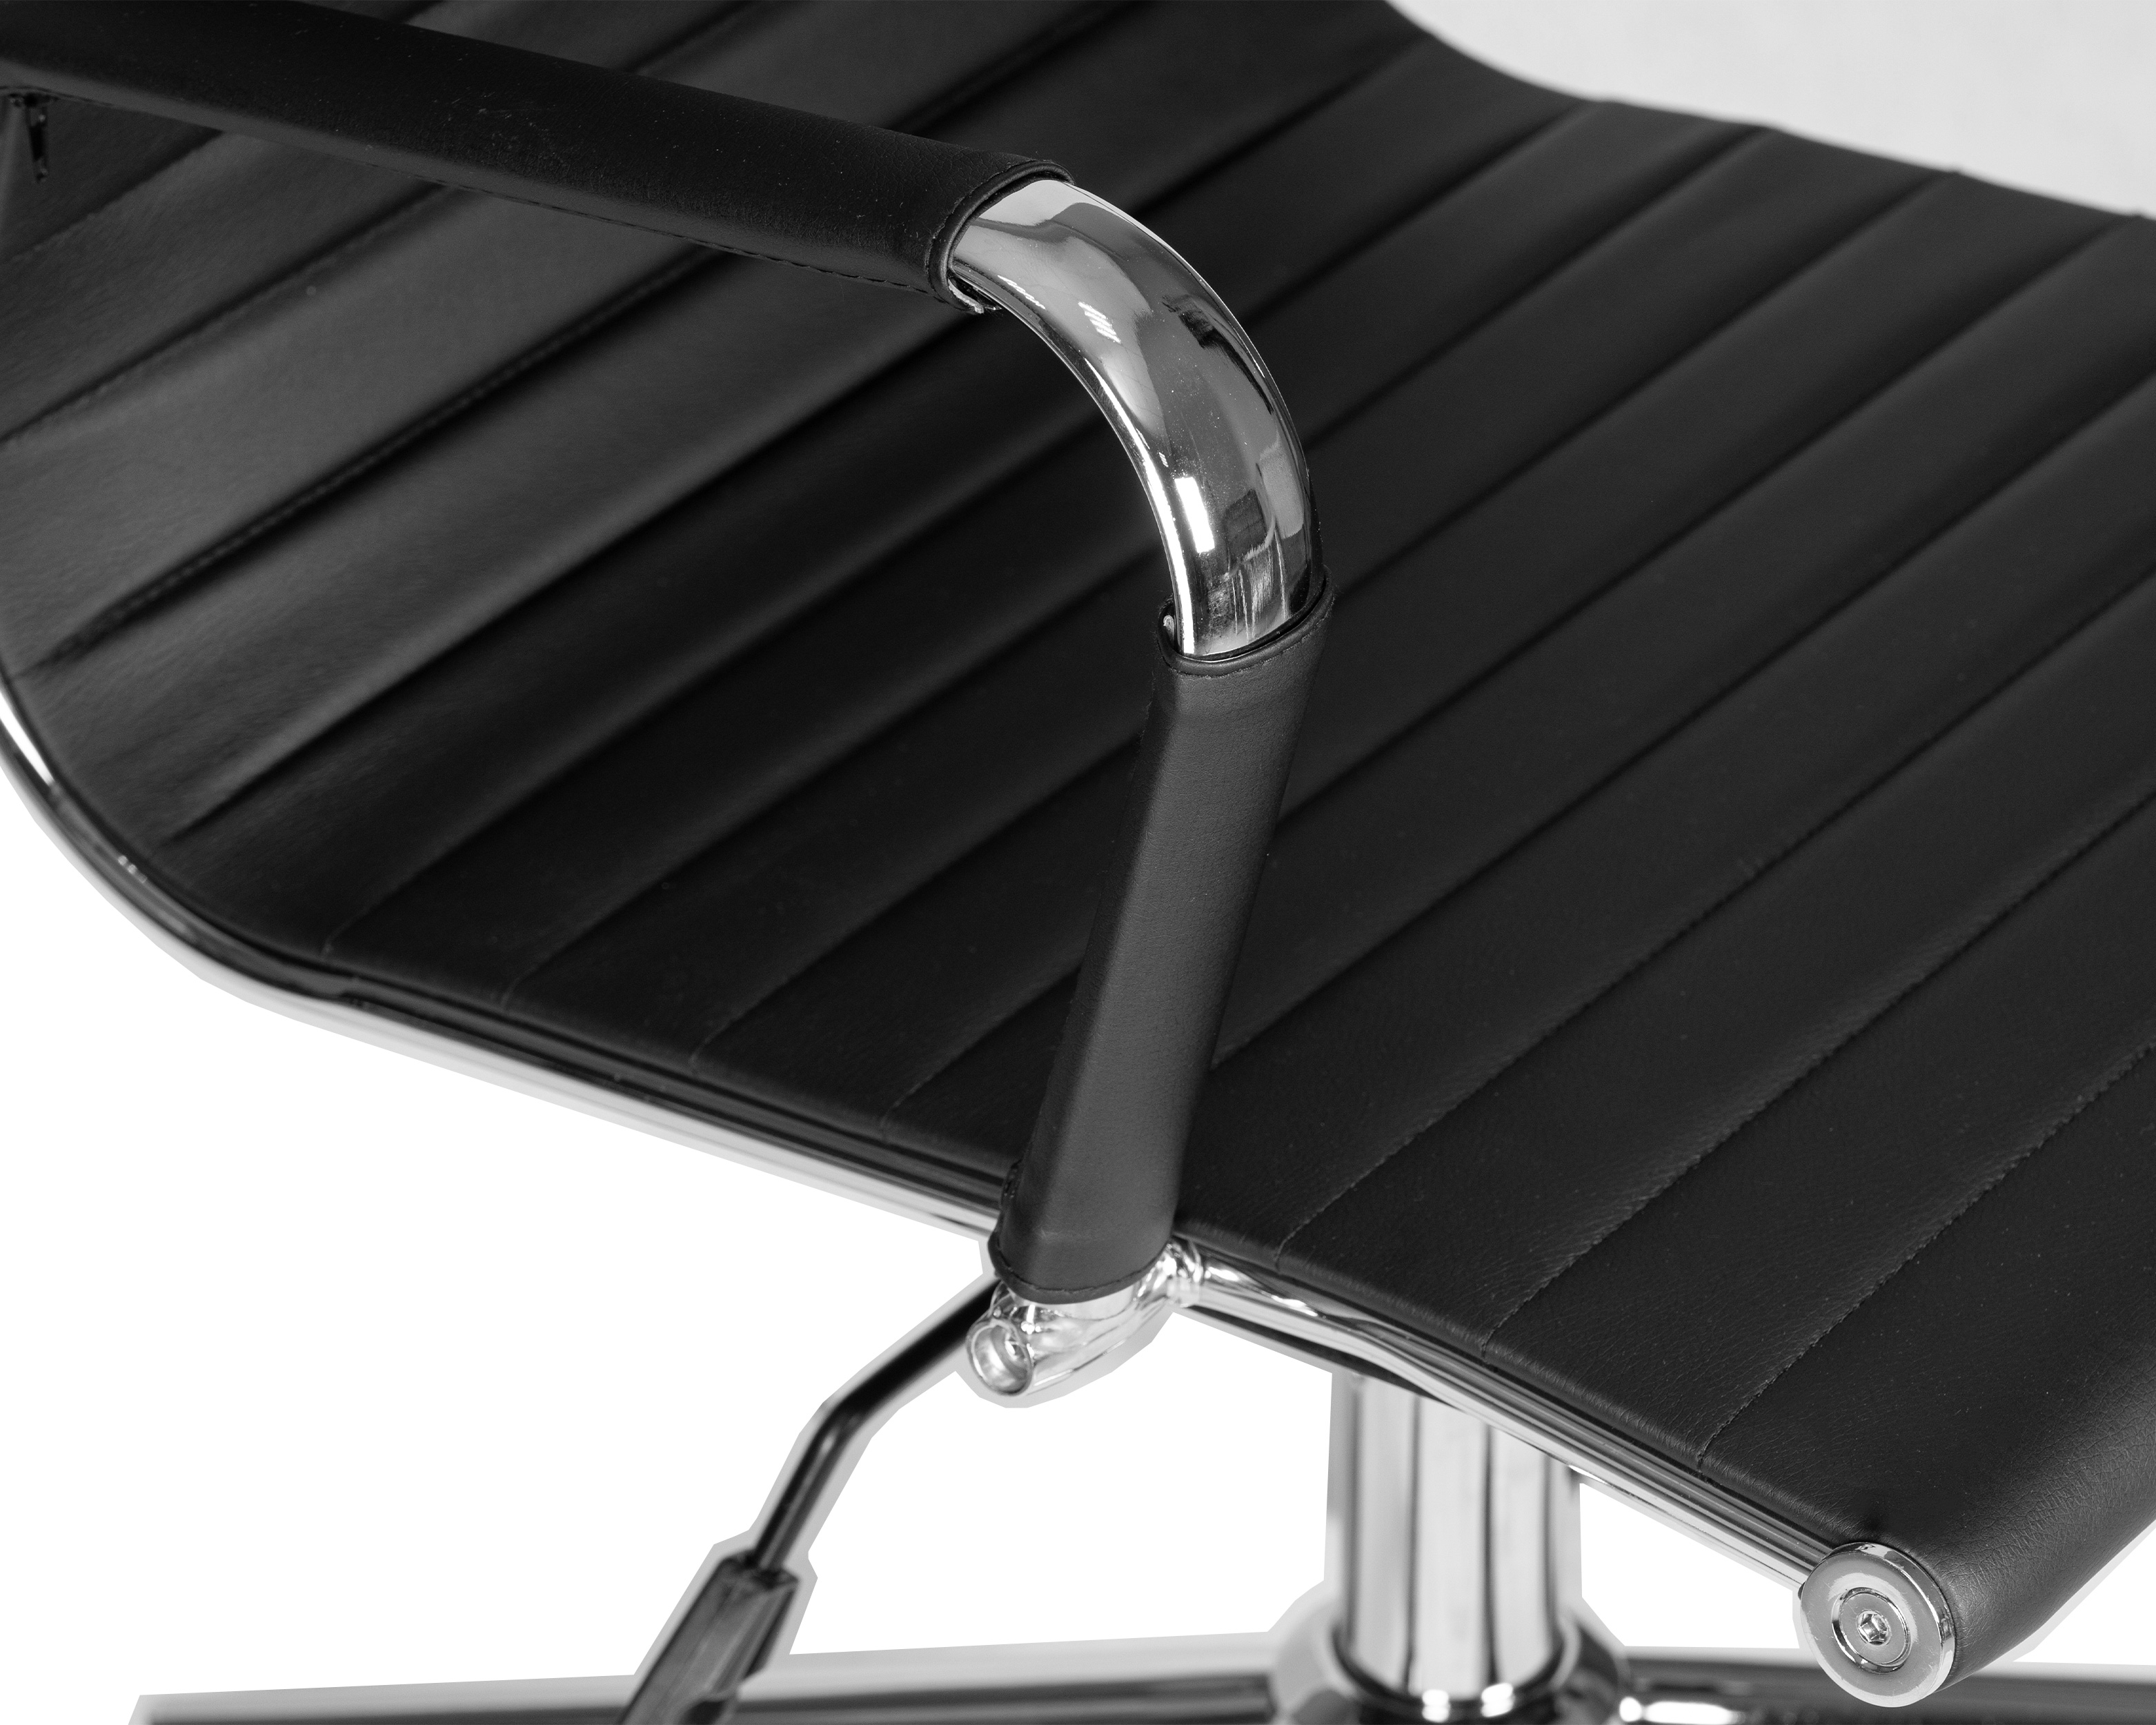 Офисное кресло для руководителей DOBRIN CLARK SIMPLE чёрный